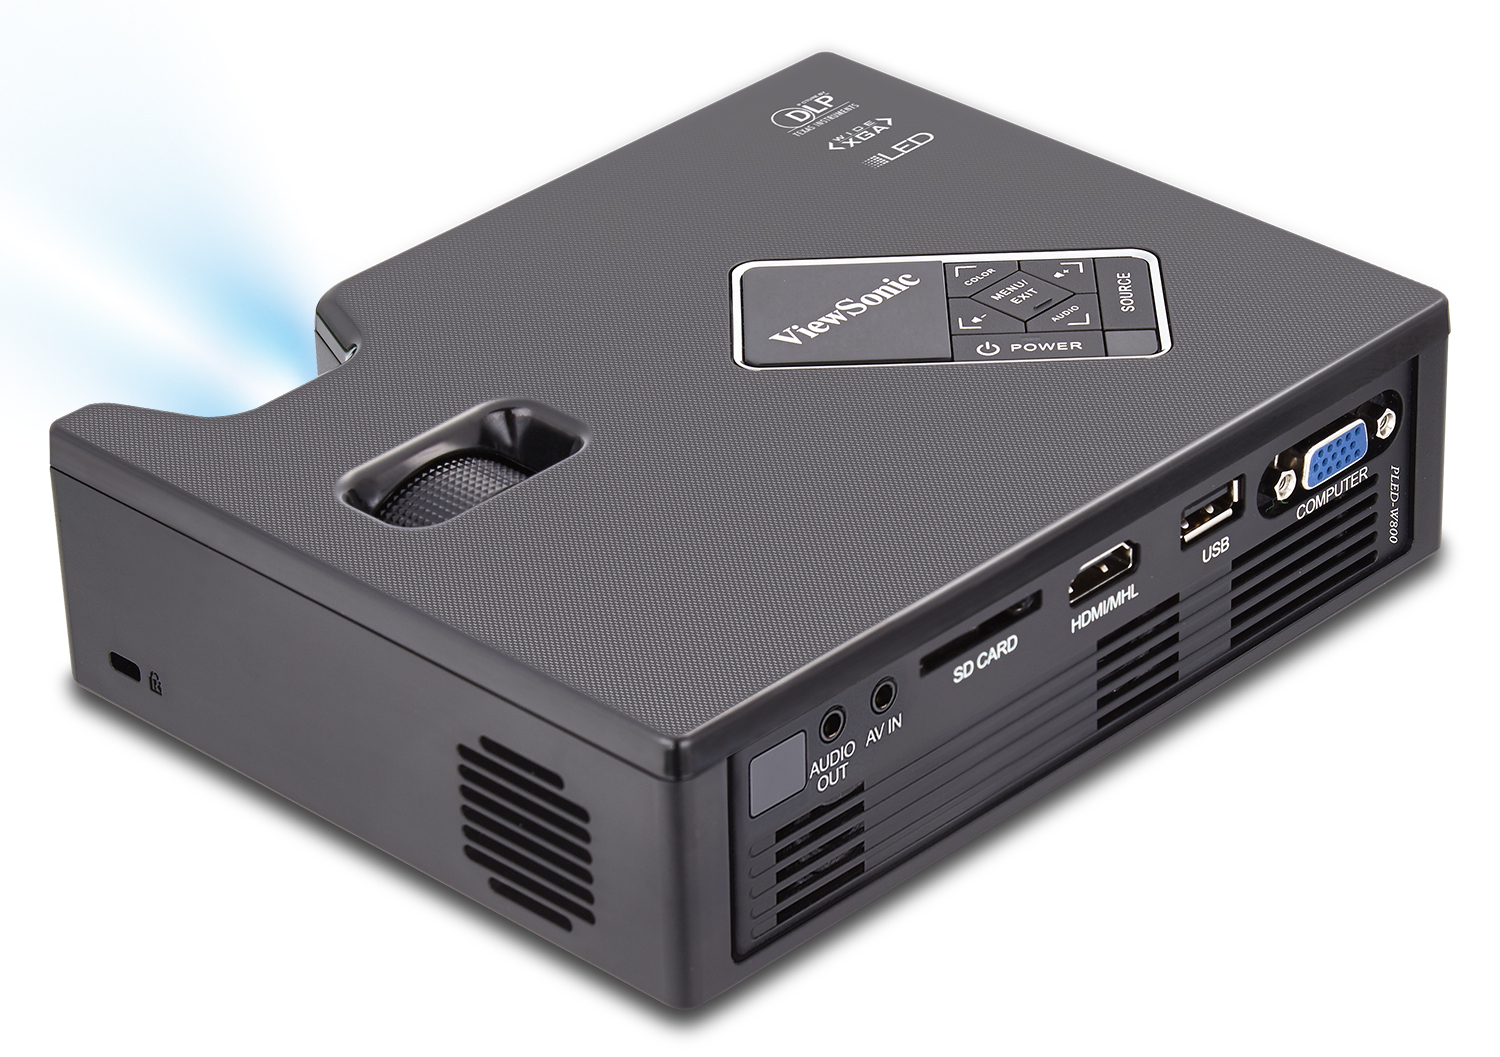 Viewsonic PLED-W600 DLP Projector HDMI Ultra Portable WXGA 720P PLED-W600 